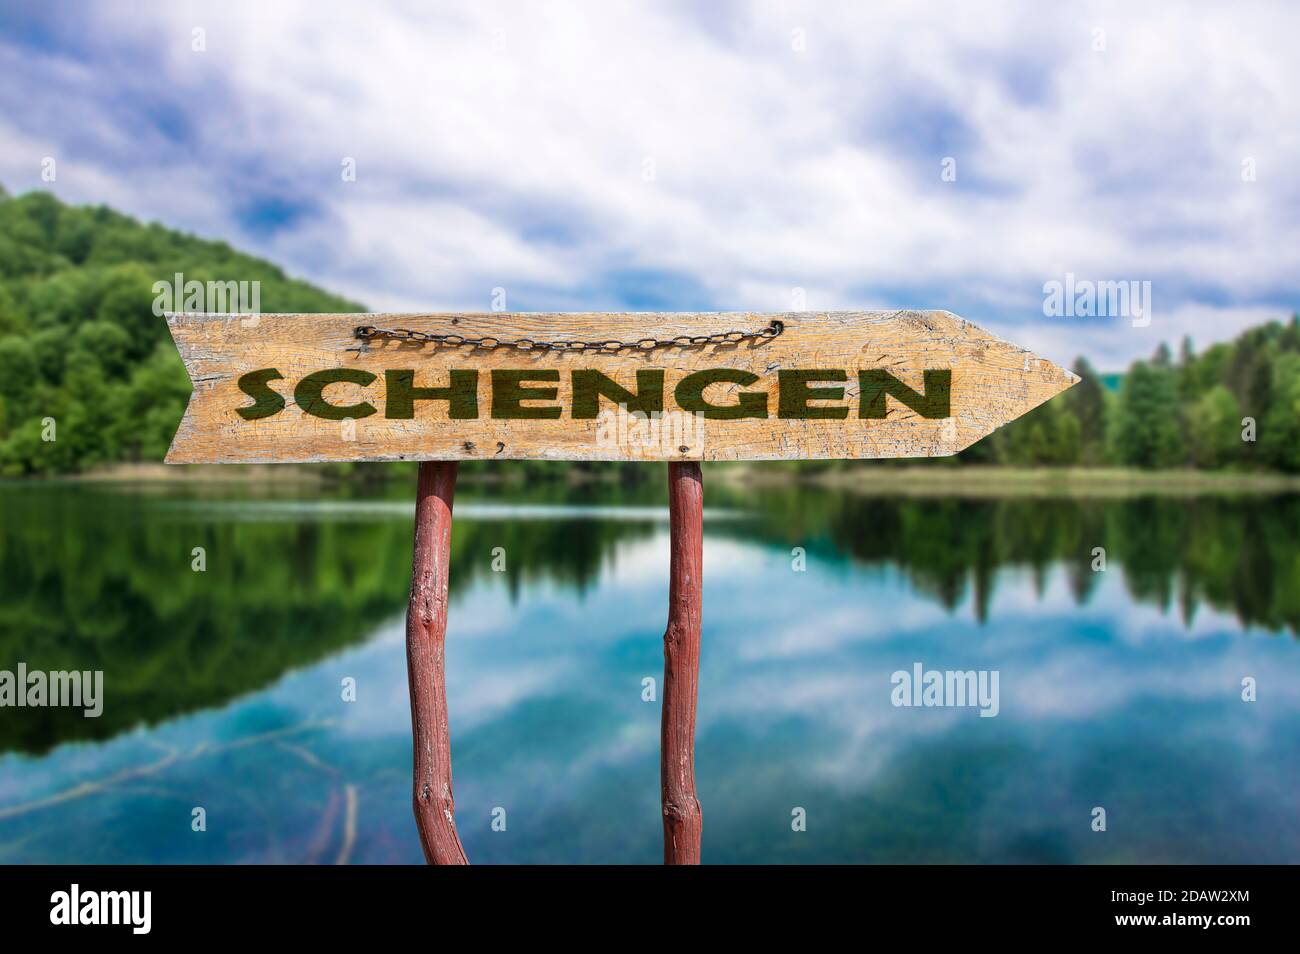 Schengen Holzpfeil Straßenschild gegen See und Wald Hintergrund. Schengen - Europäischer Grenzkontrollraum Stockfoto